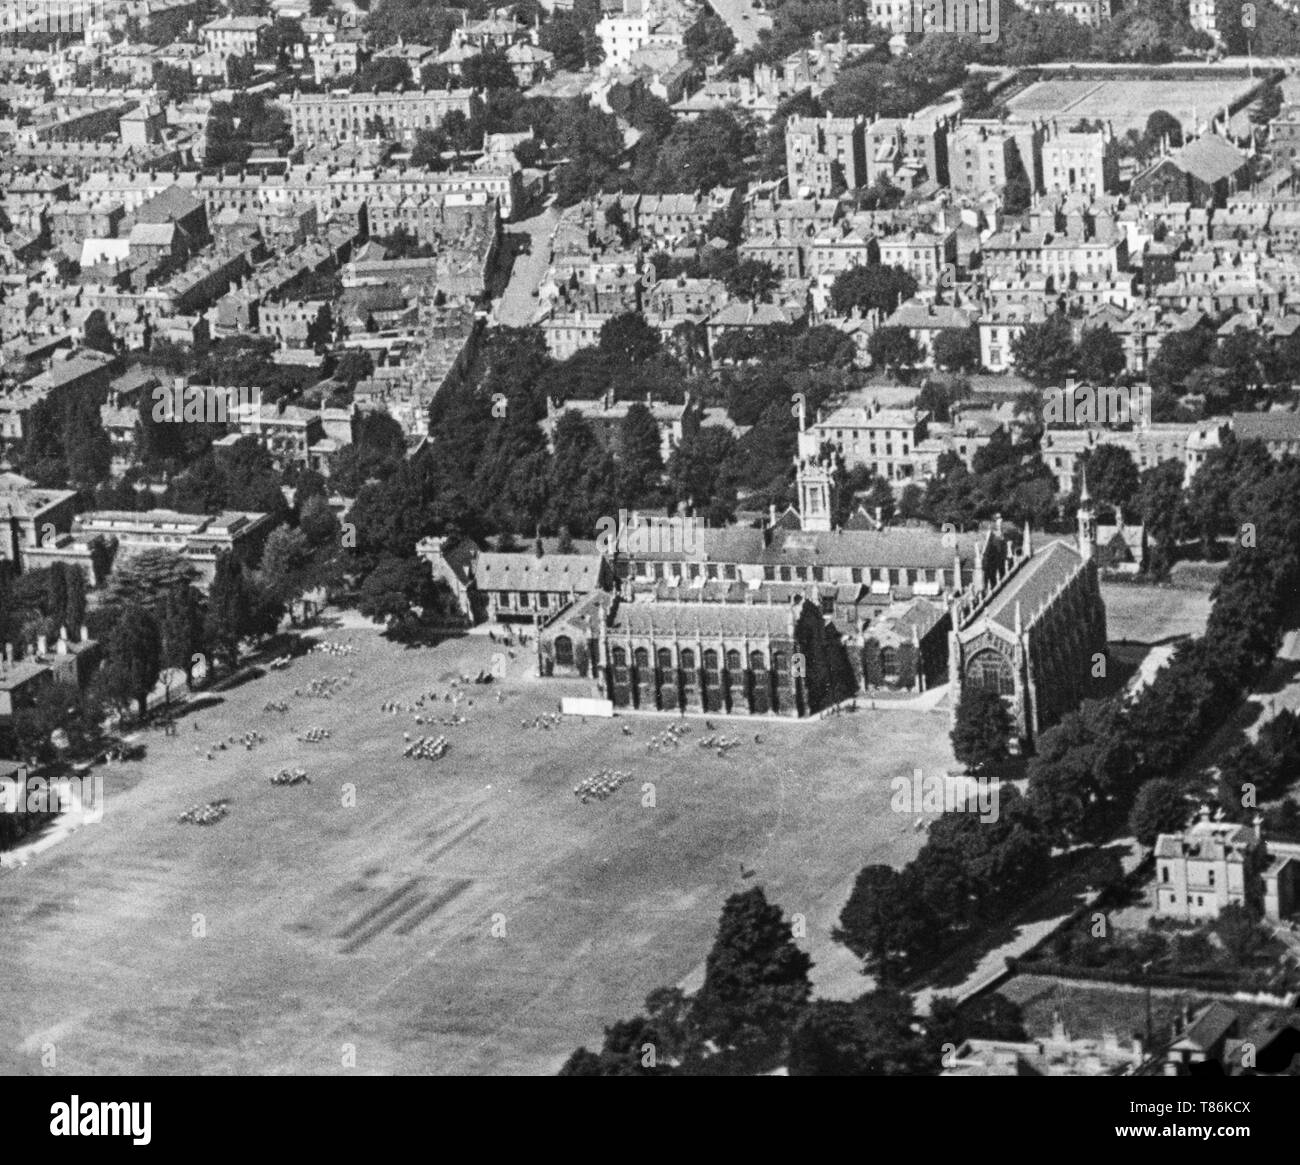 Un bianco e nero fotografia aerea adottate il 21 giugno 1921 mostra Cheltenham College e la zona circostante, nel Gloucestershire, Inghilterra. Foto Stock